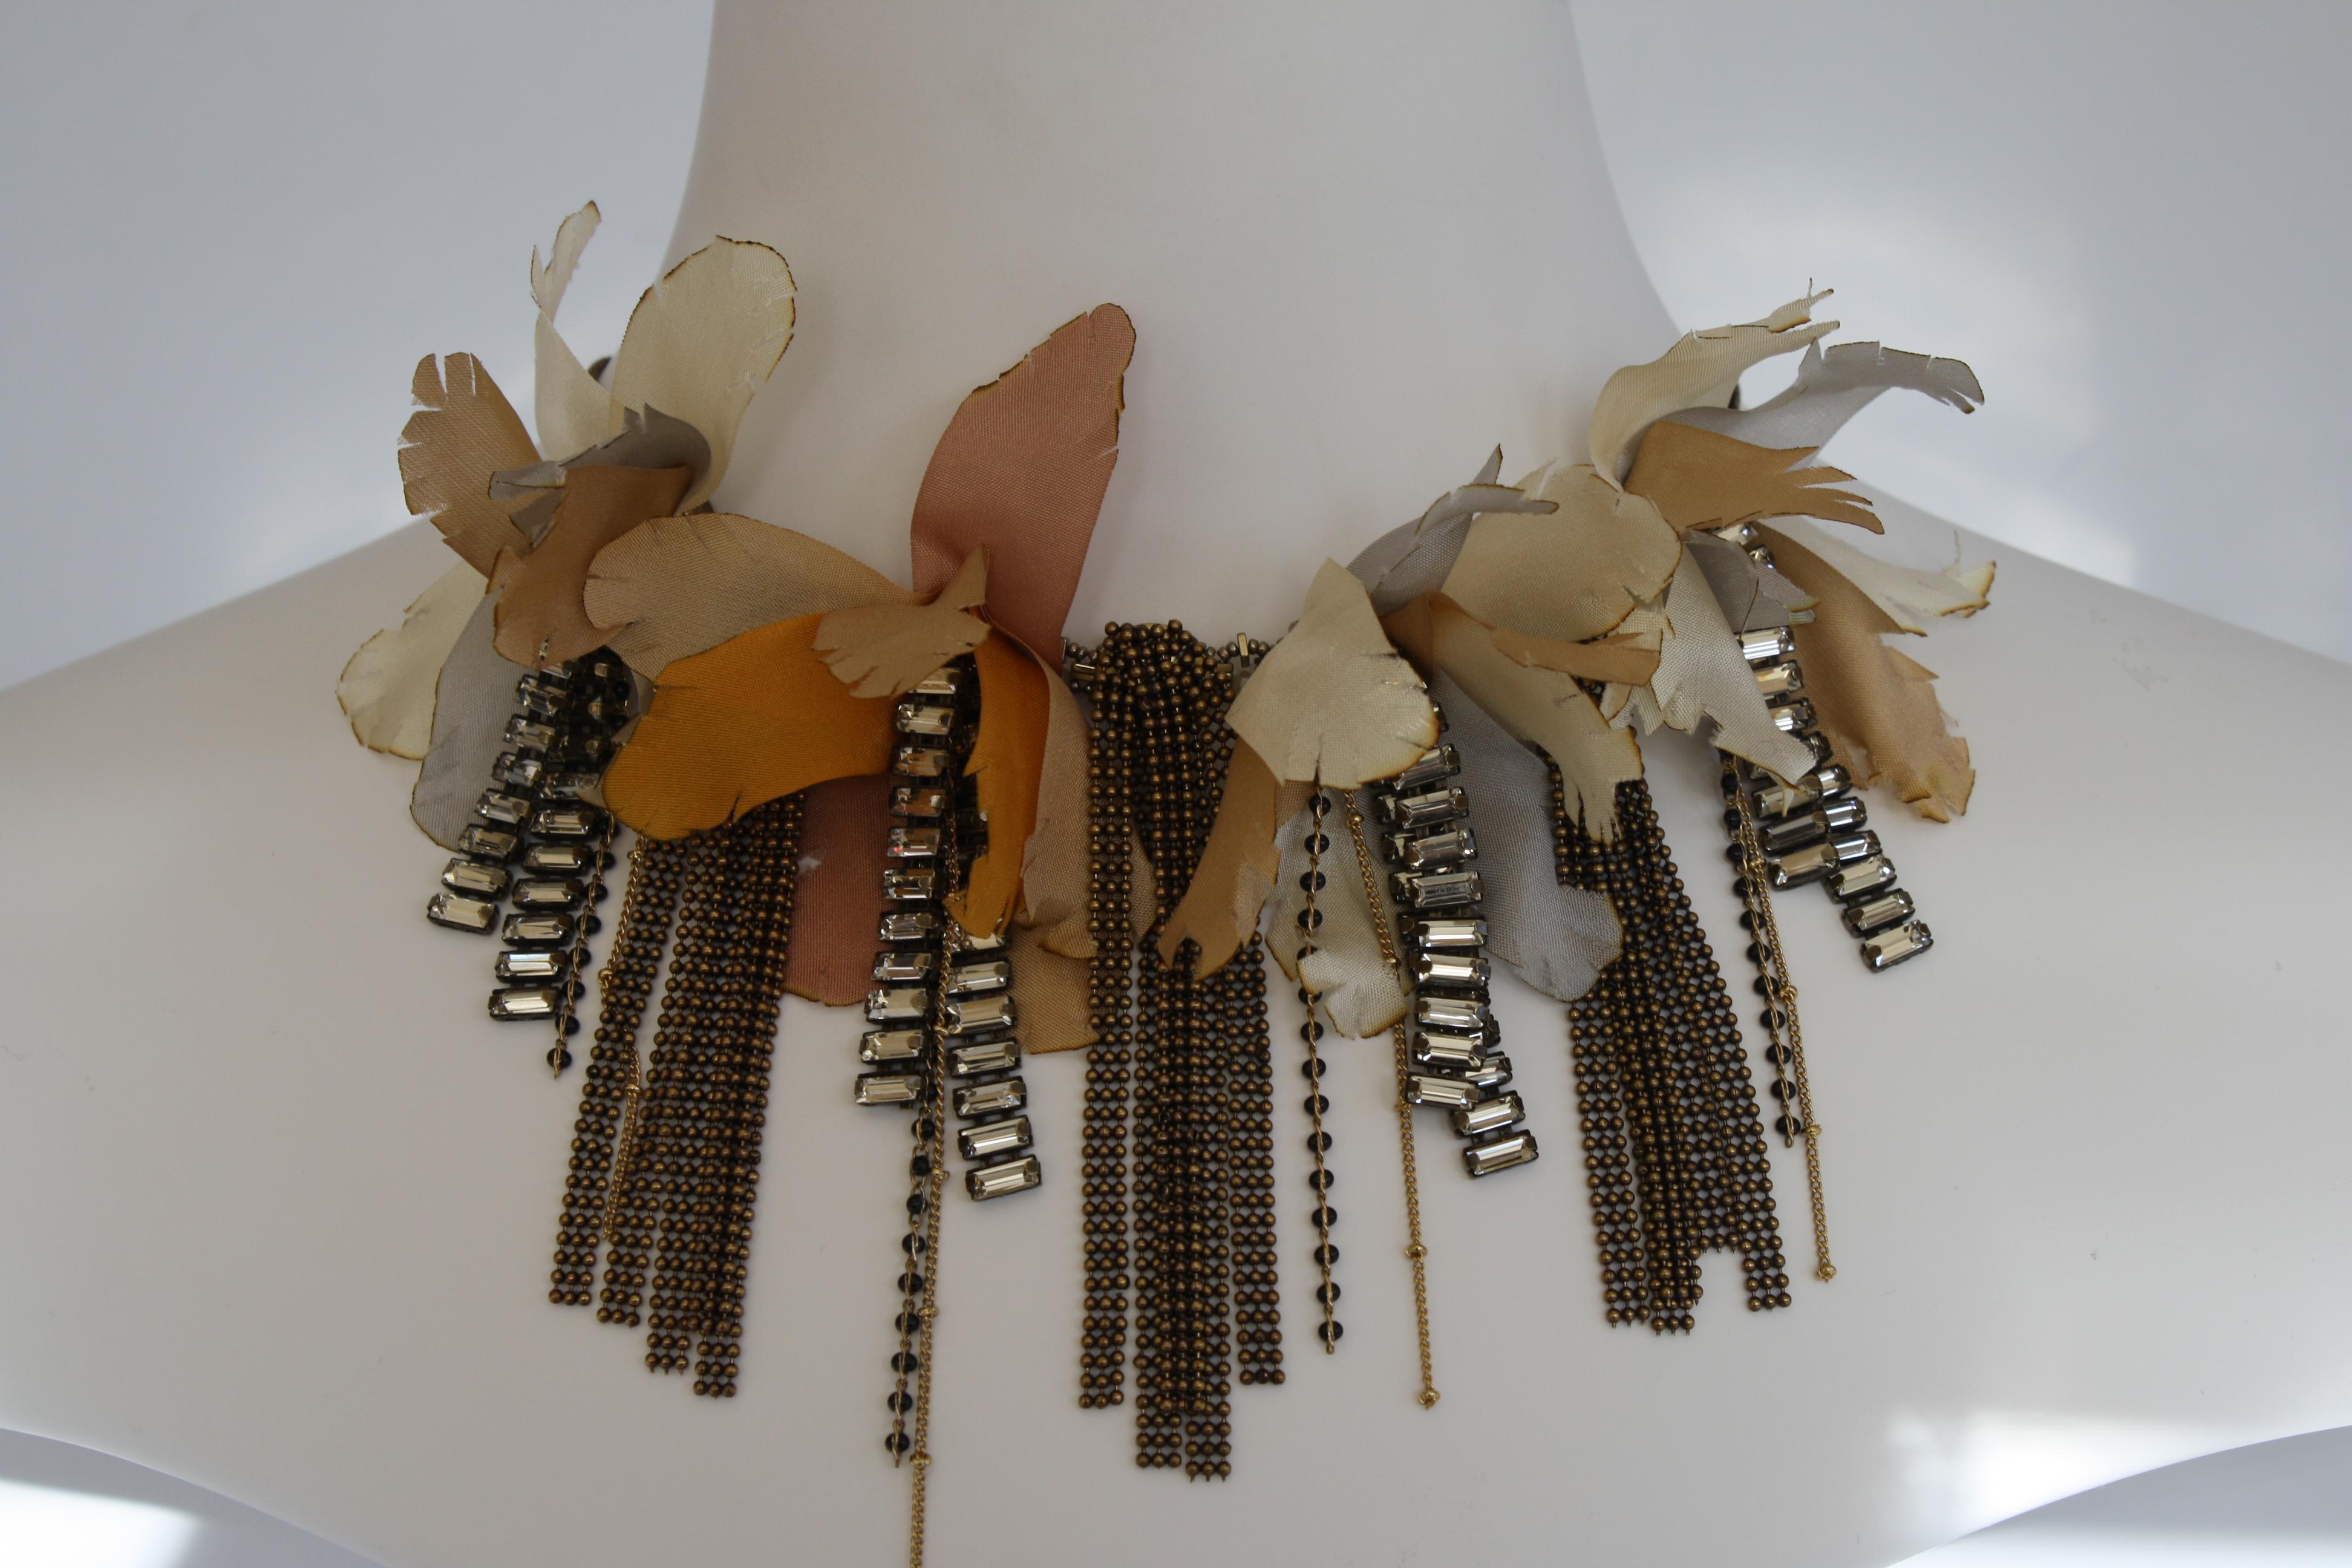 Collier de fleurs en ruban de lurex avec chaîne en laiton et baguettes en verre du designer italien Tataborello. 

19